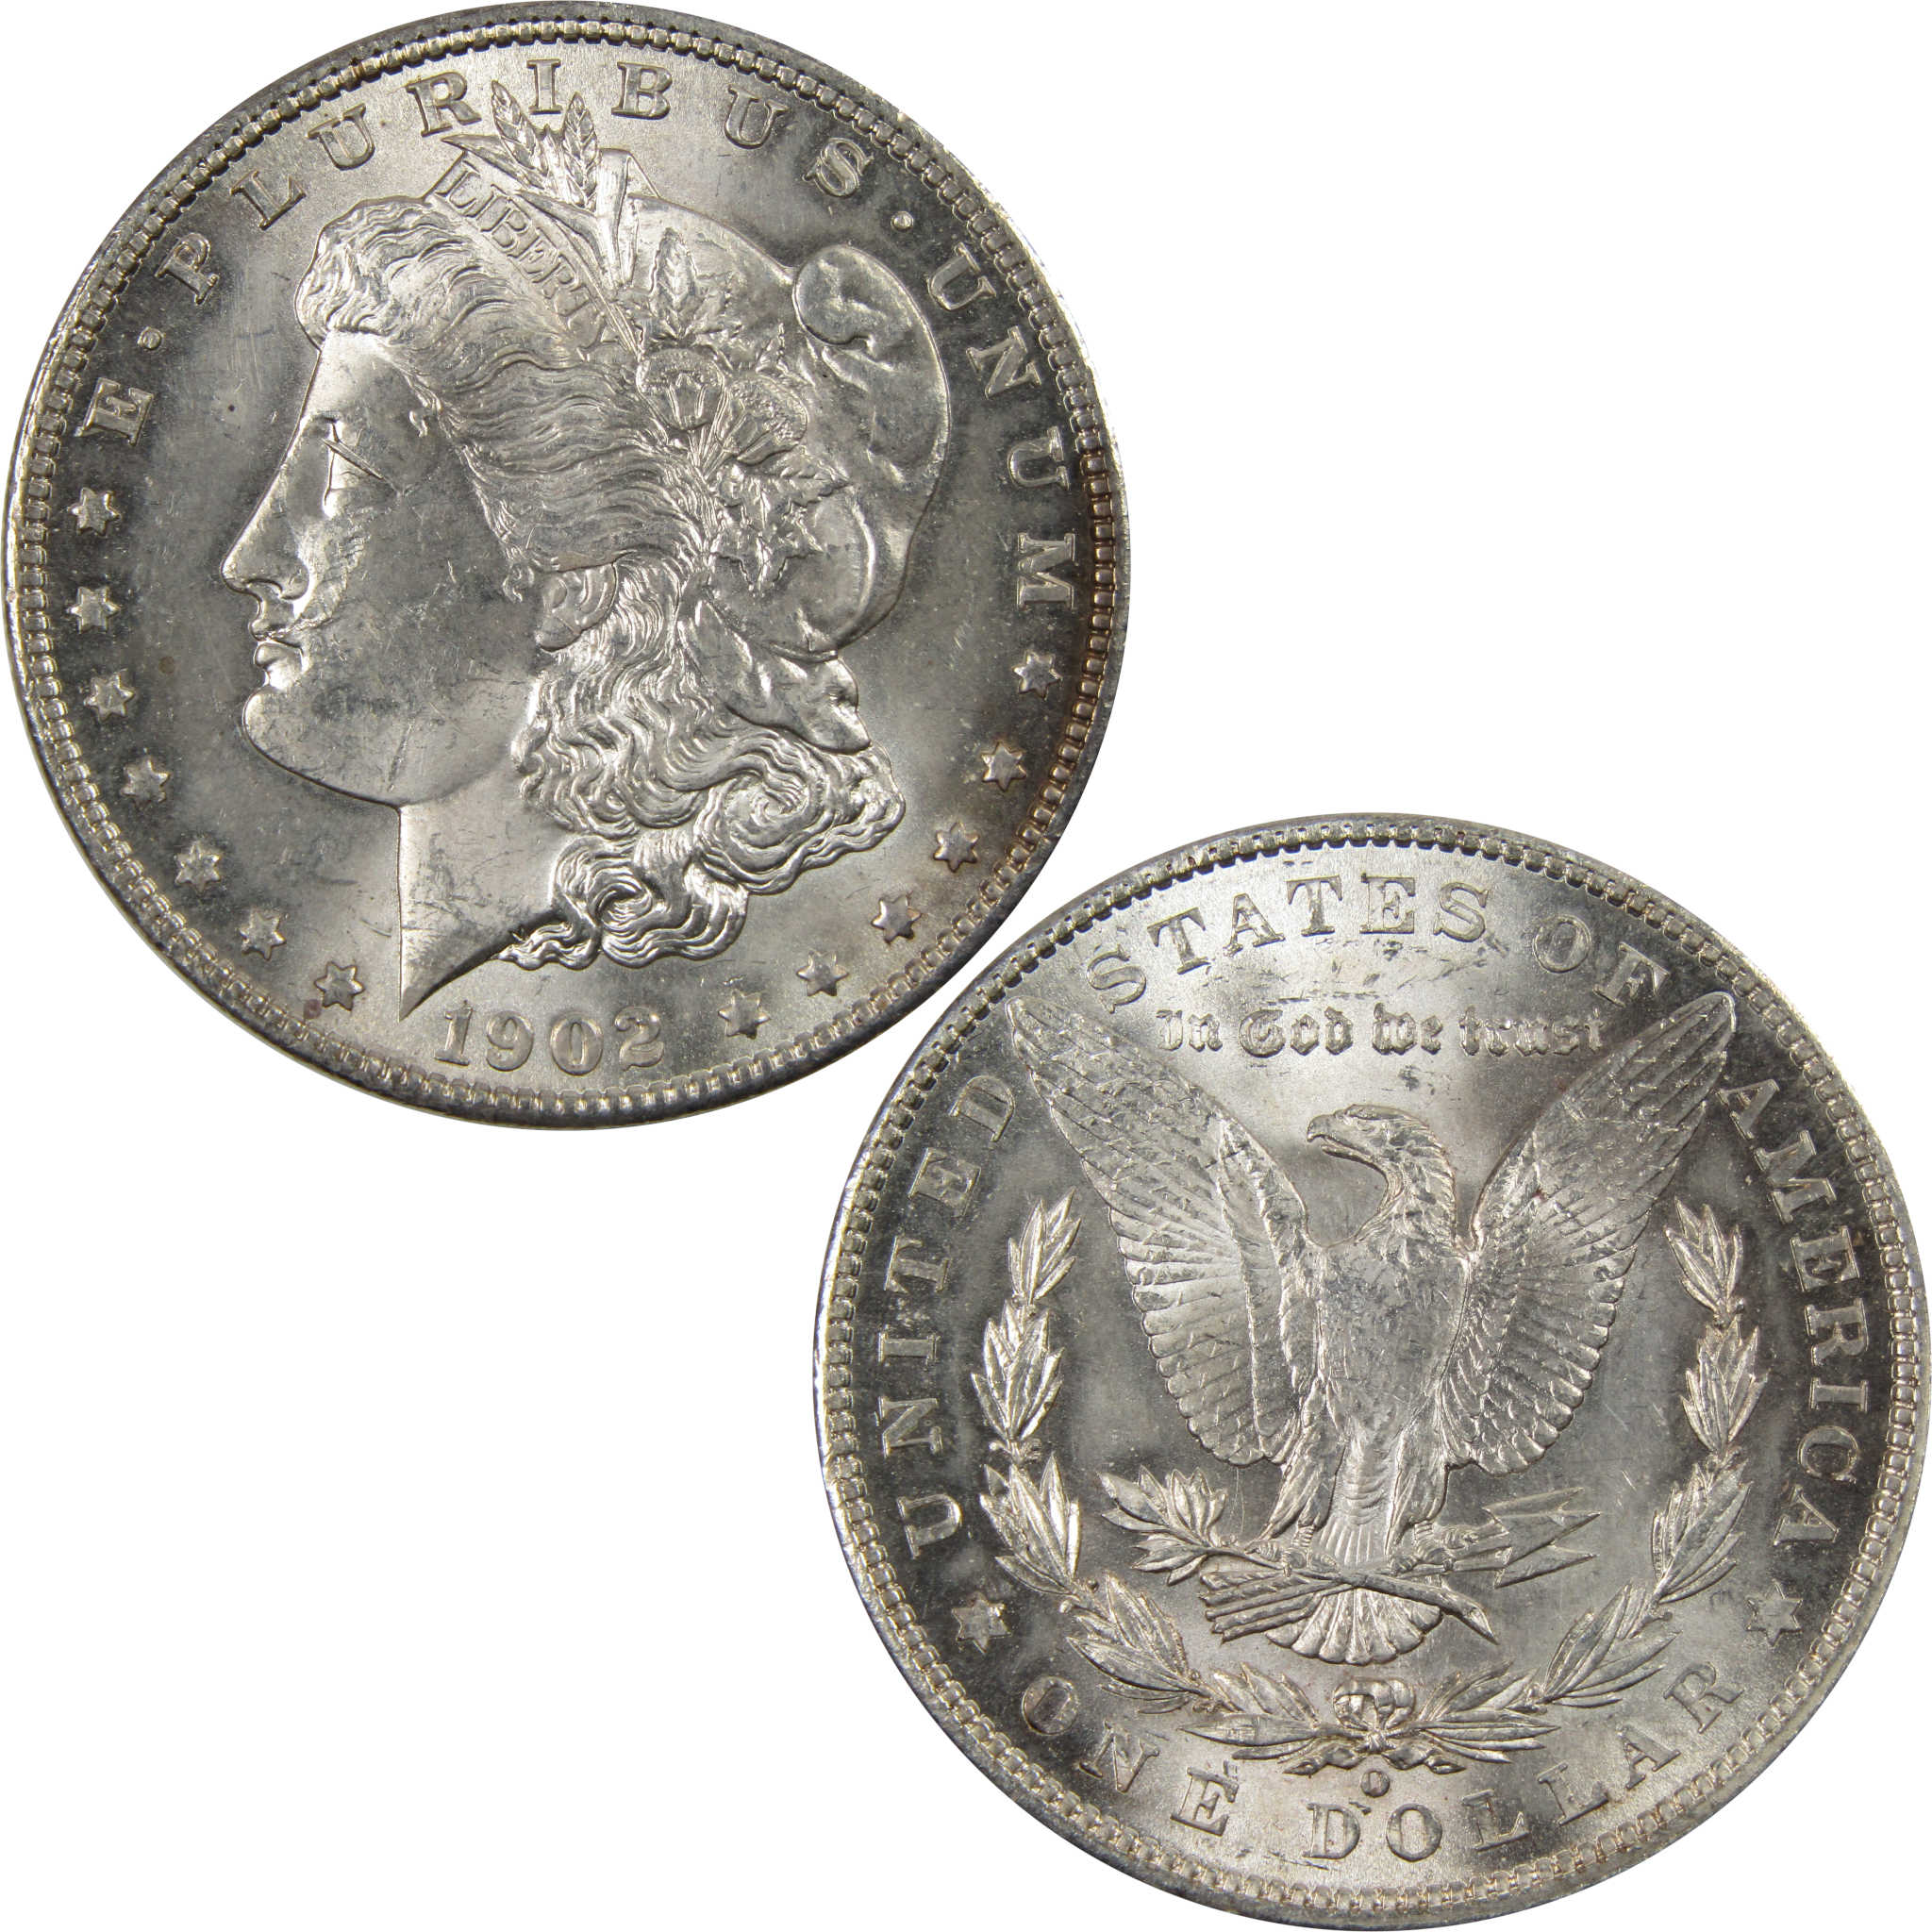 1902 O Morgan Dollar BU Uncirculated 90% Silver $1 Coin SKU:I7303 - Morgan coin - Morgan silver dollar - Morgan silver dollar for sale - Profile Coins &amp; Collectibles